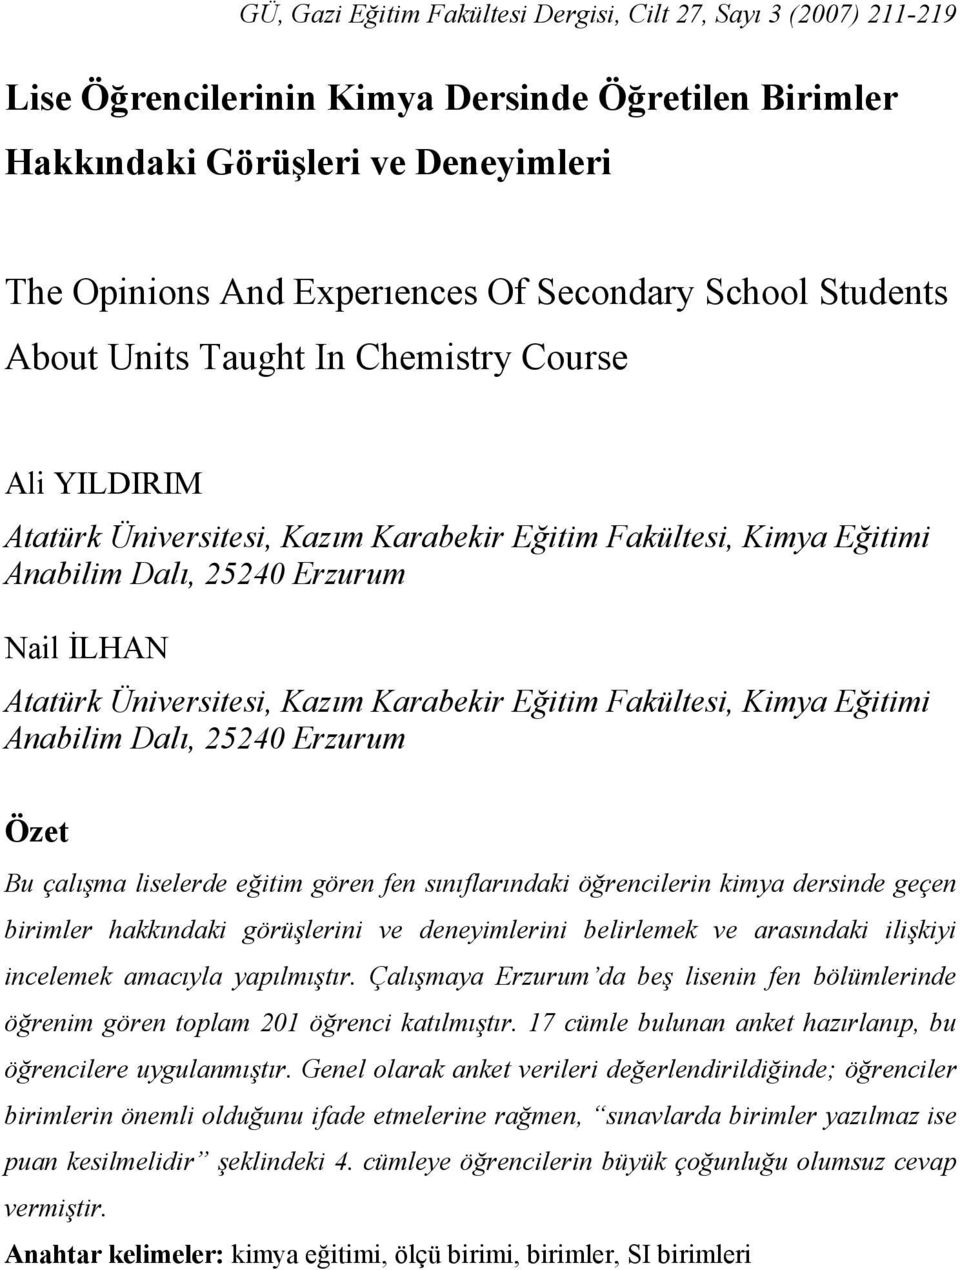 Kazım Karabekir Eğitim Fakültesi, Kimya Eğitimi Anabilim Dalı, 25240 Erzurum Özet Bu çalışma liselerde eğitim gören fen sınıflarındaki öğrencilerin kimya dersinde geçen birimler hakkındaki